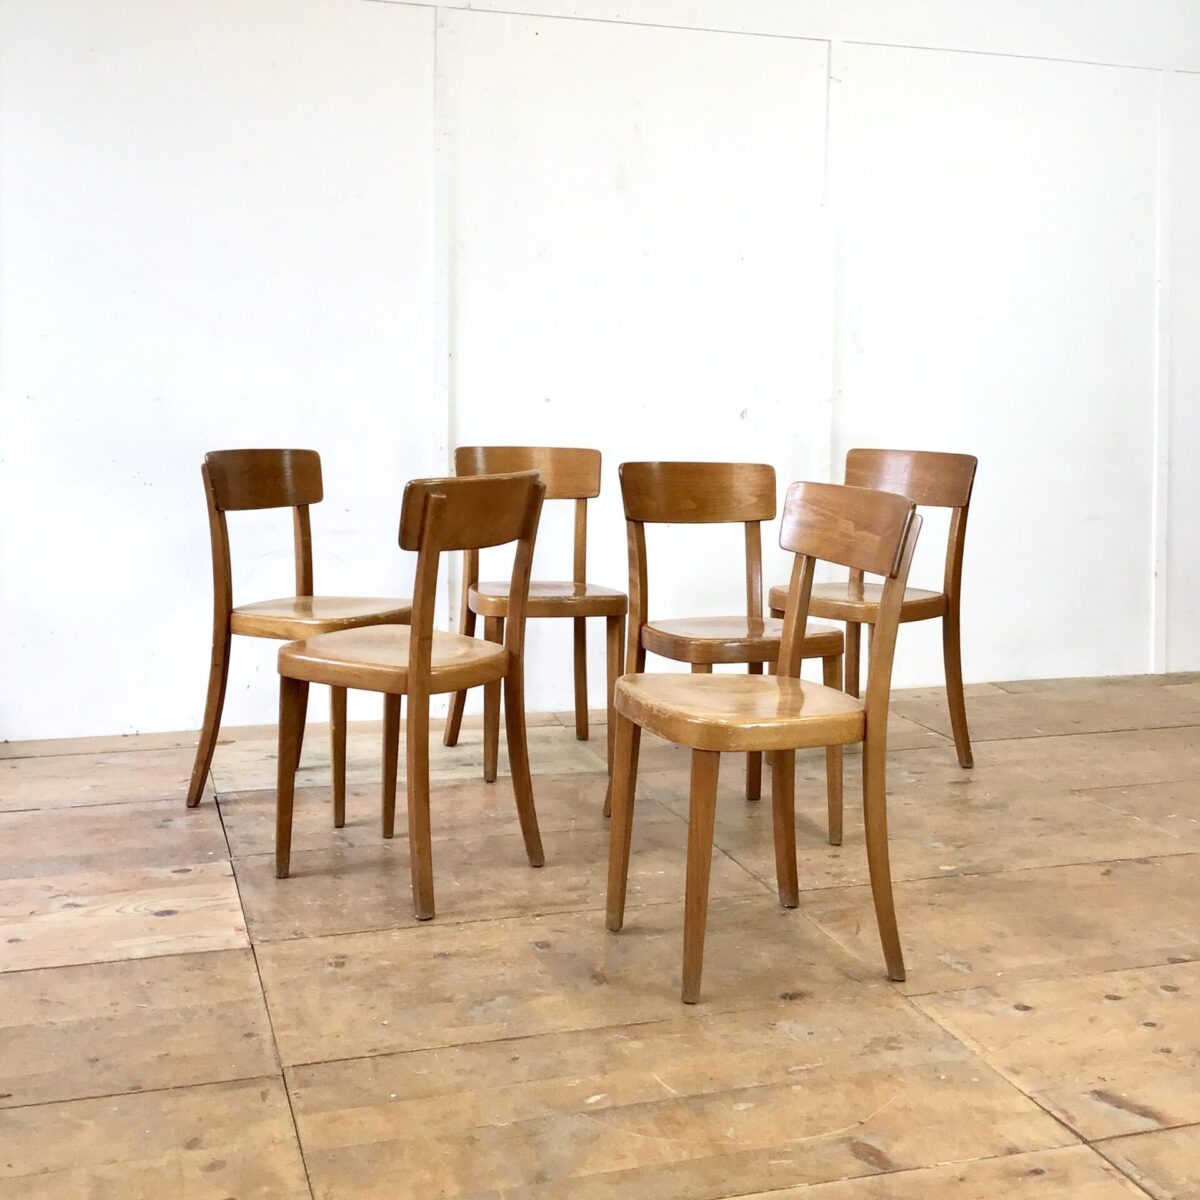 Stabile Qualitäts Stühle von Tütsch Klingnau, mit Alterspatina. Preis pro Stuhl. Simple funktionale Esszimmer Stühle ähnlich dem horgenglarus Classic Modell.